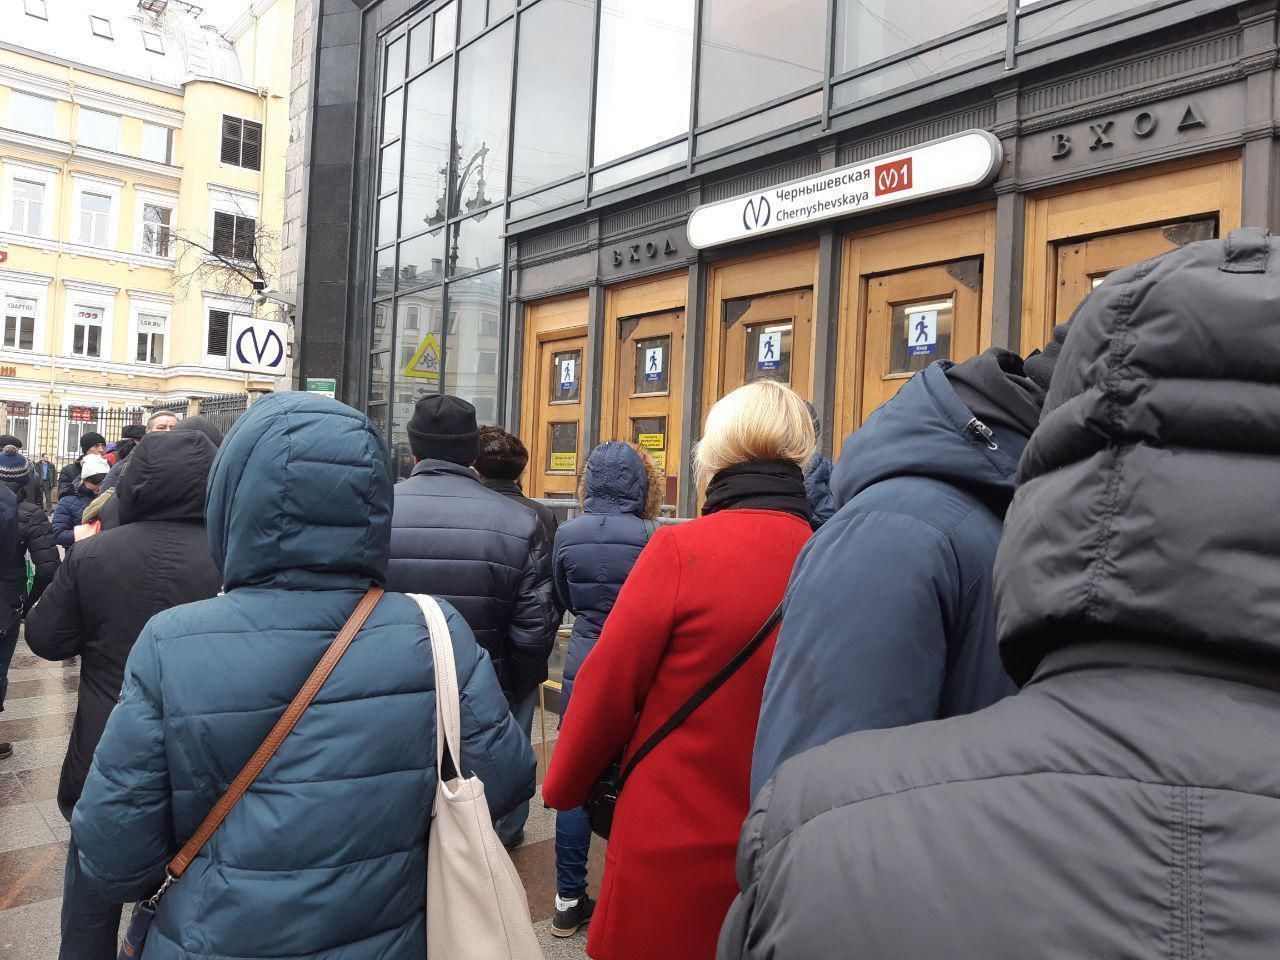 Станцию метро «Чернышевская» проверили за 40 минут